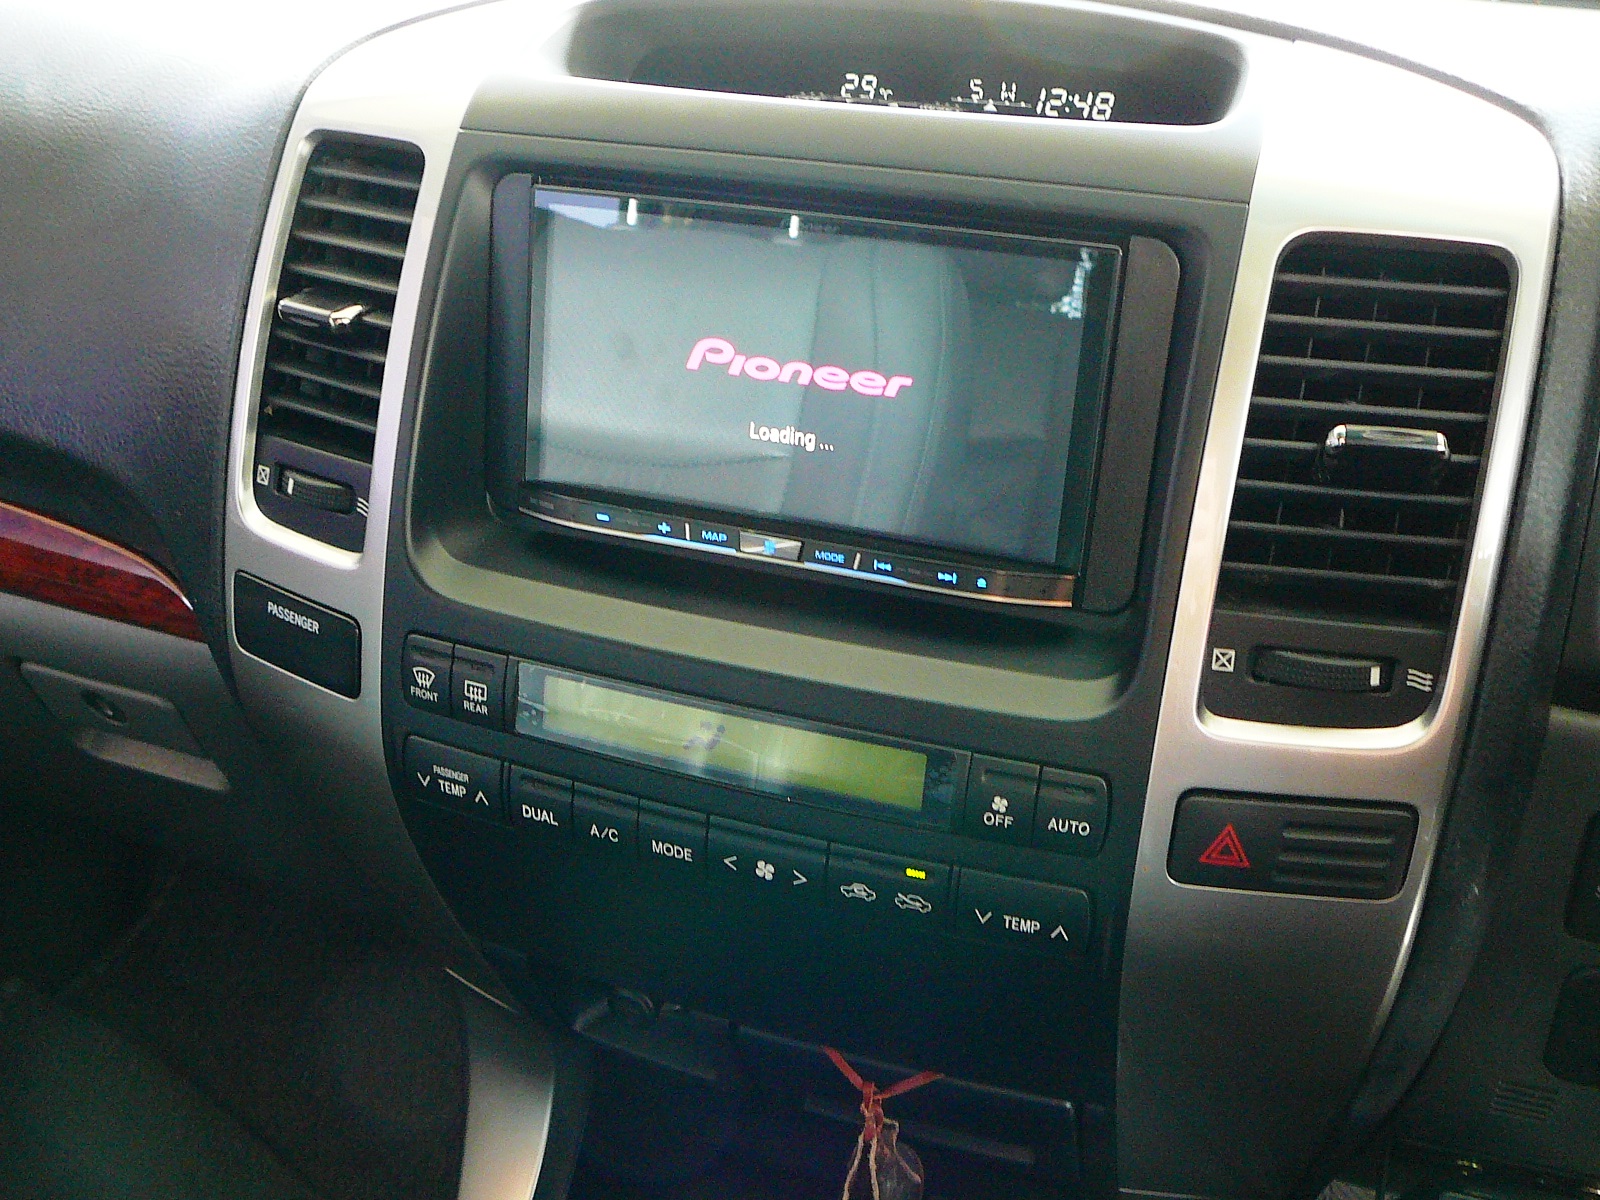 Toyota Prado 120 Series 2008, Pioneer AVH Audio Visual Unit & Reverse Camera